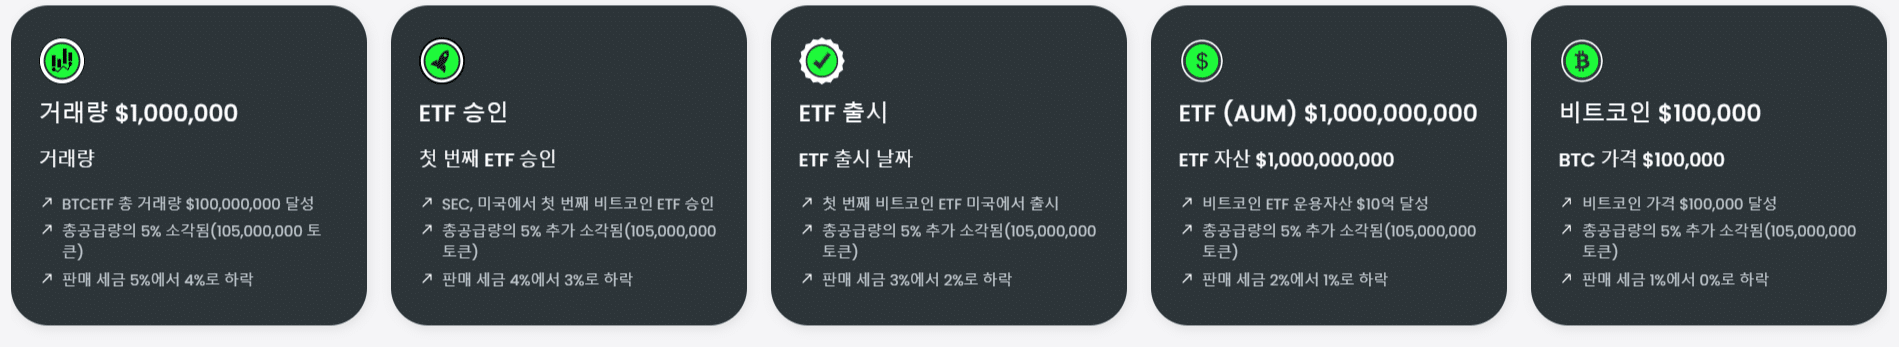 비트코인 ETF 이정표